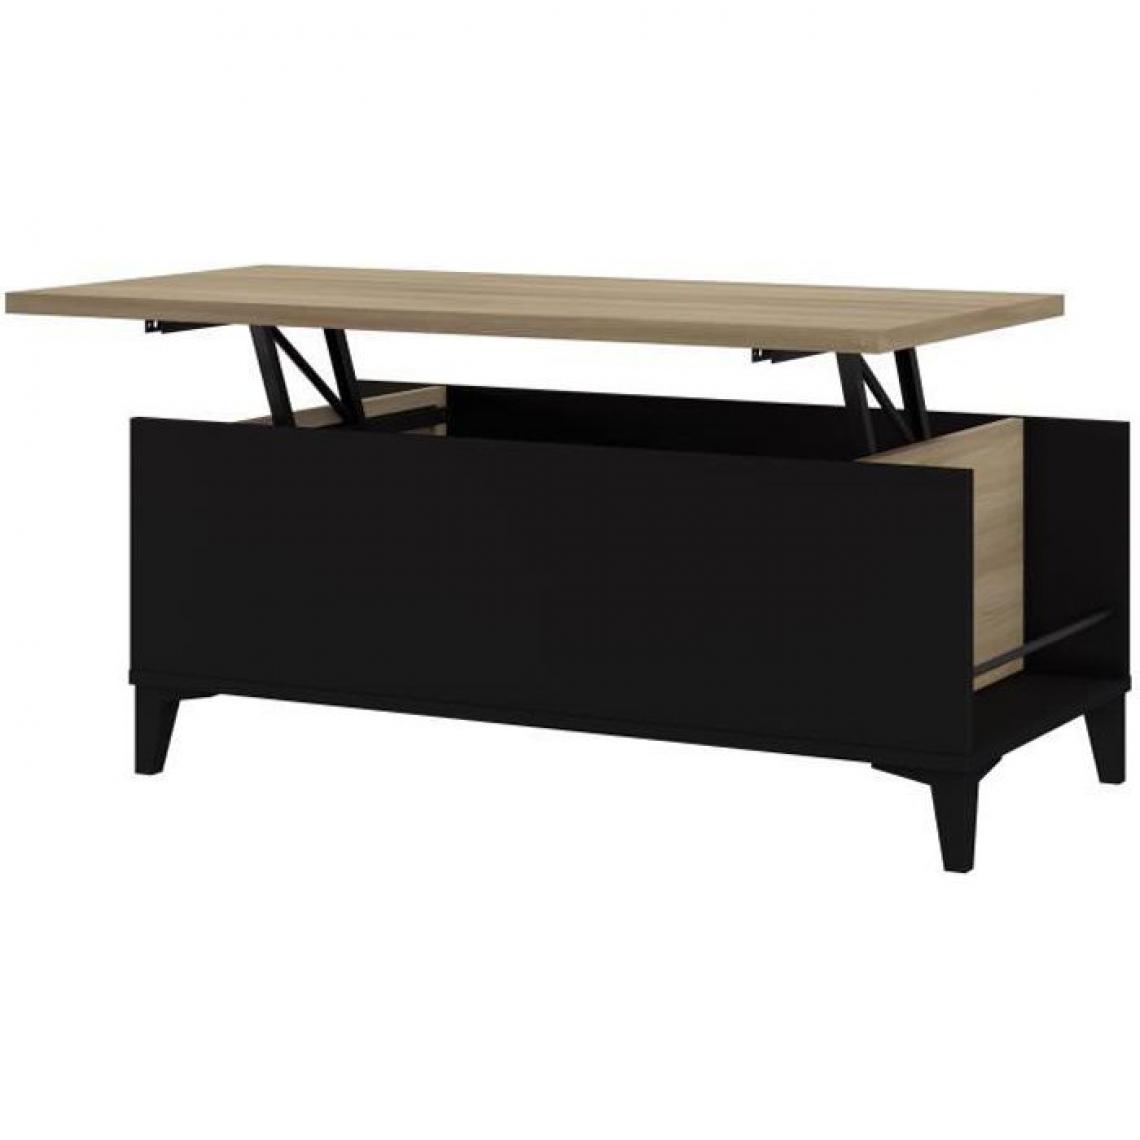 Cstore - EVAN - table basse avec plateau relevable noir / chêne l 100xp 50 / 72xh 42 / 55 cm - Tables basses